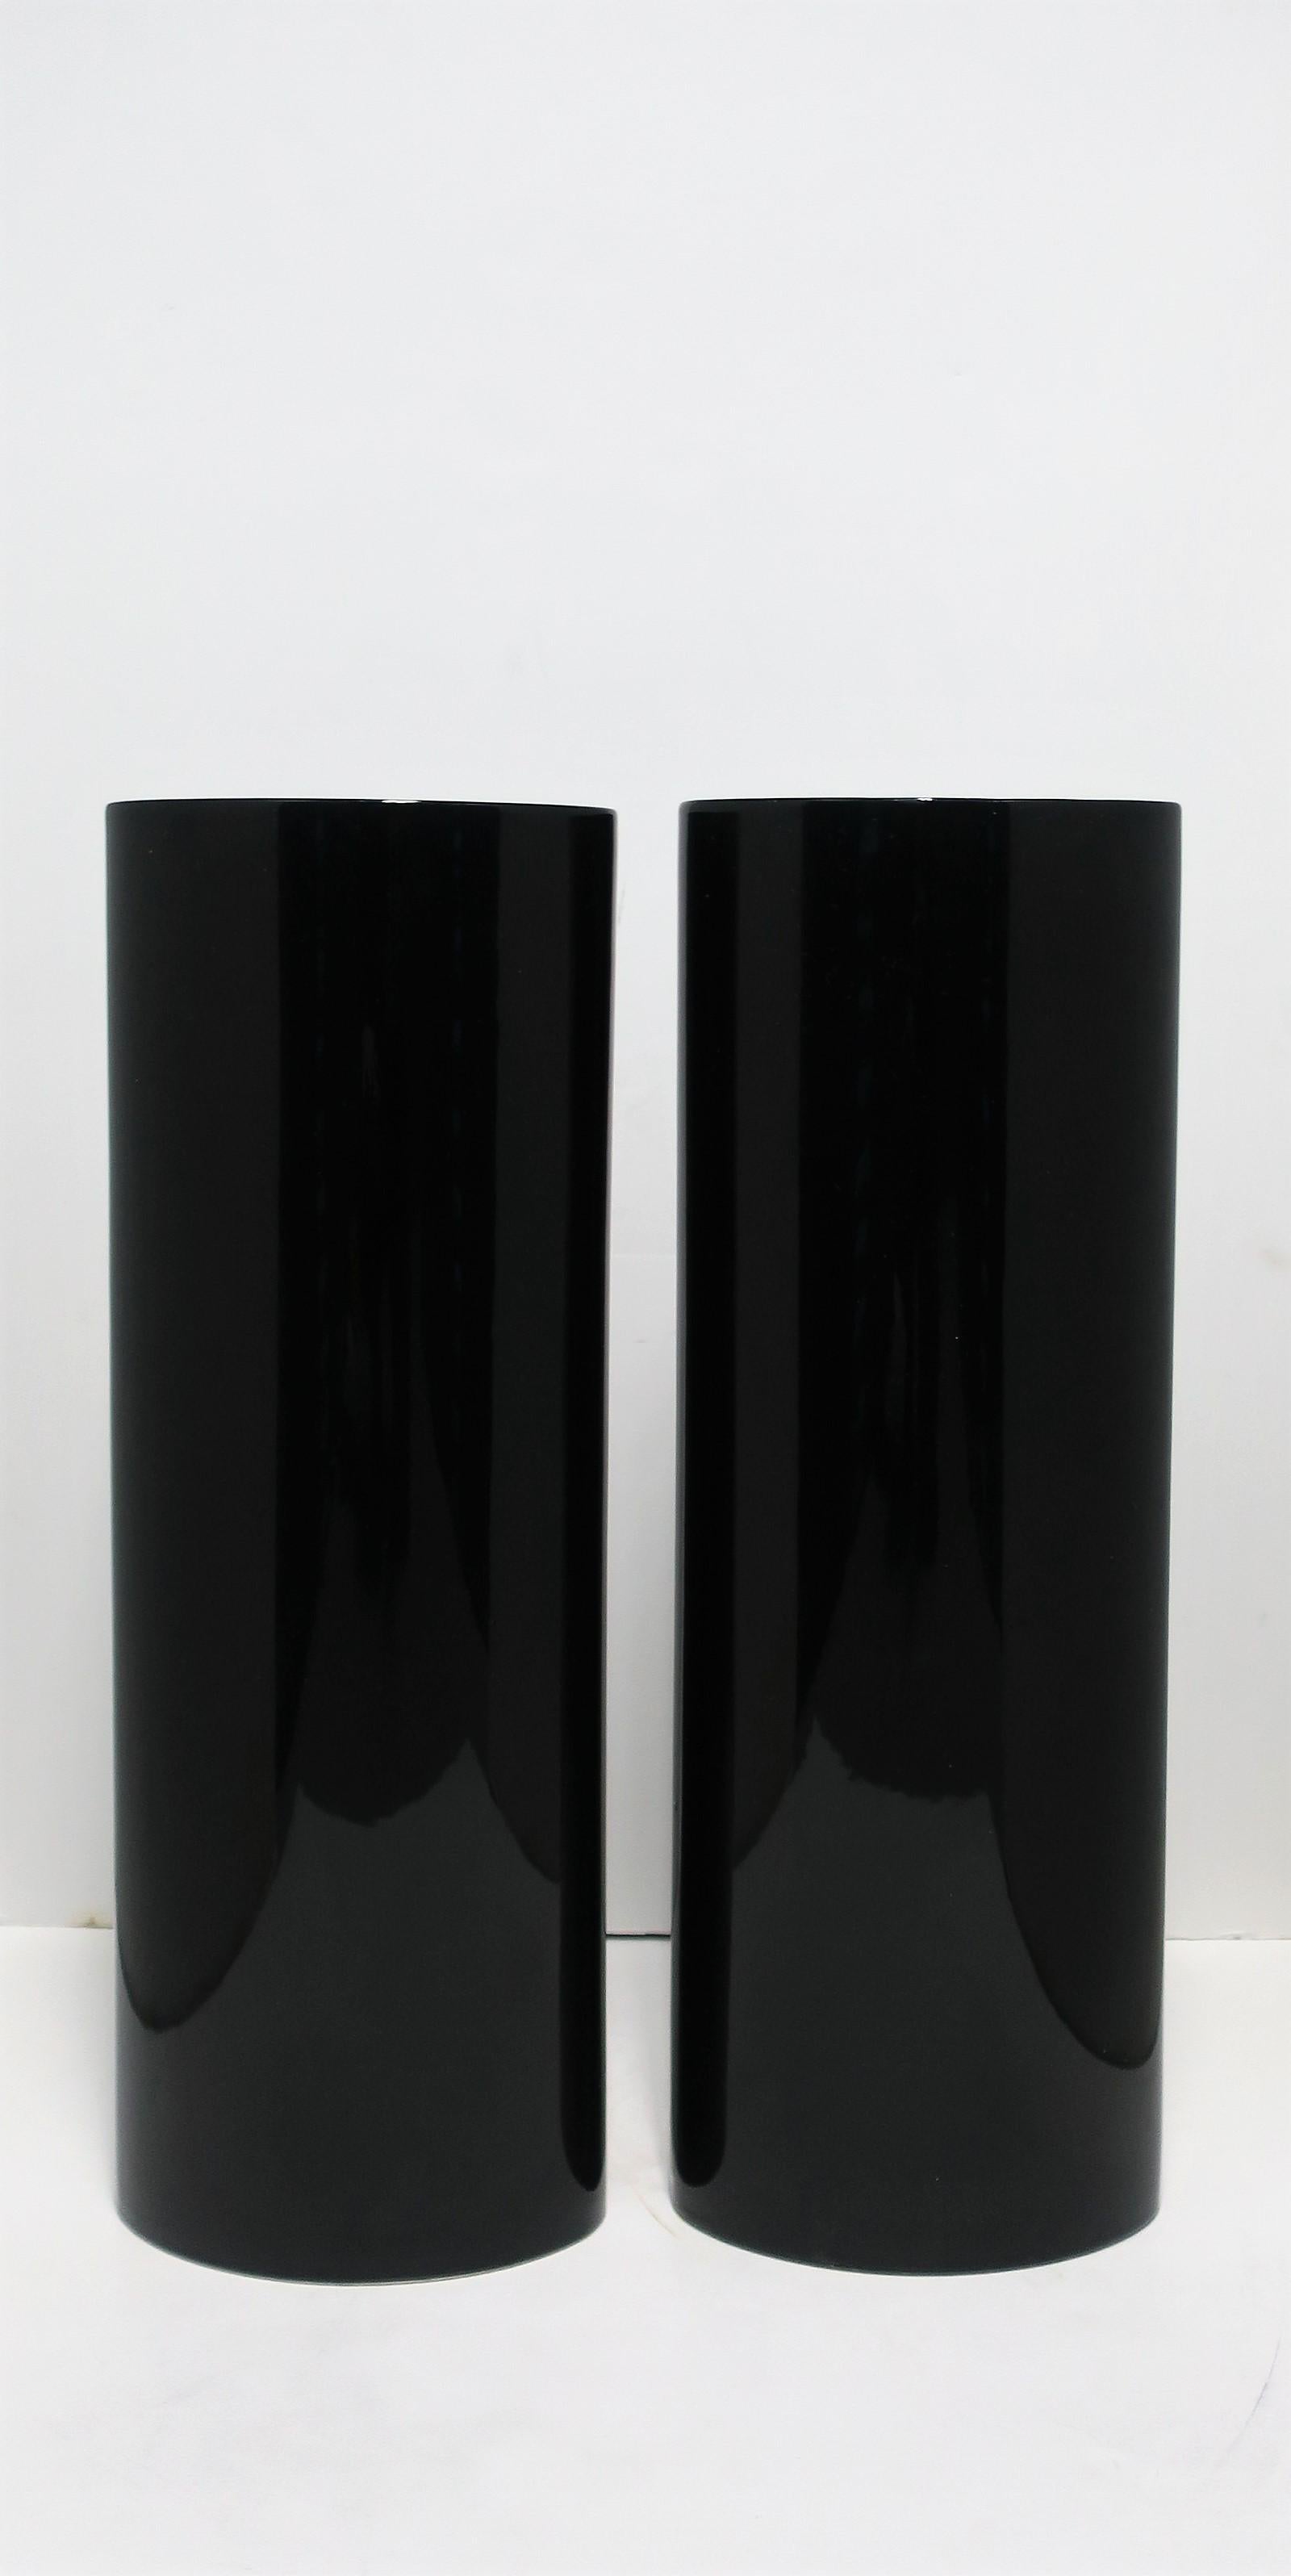 Une belle paire de très grands vases européens en céramique noire de style organique moderne, Portugal, vers la fin du XXe siècle, années 1990. Les vases en céramique émaillée ont un aspect et un toucher très brillant ou laqué. Dans le style